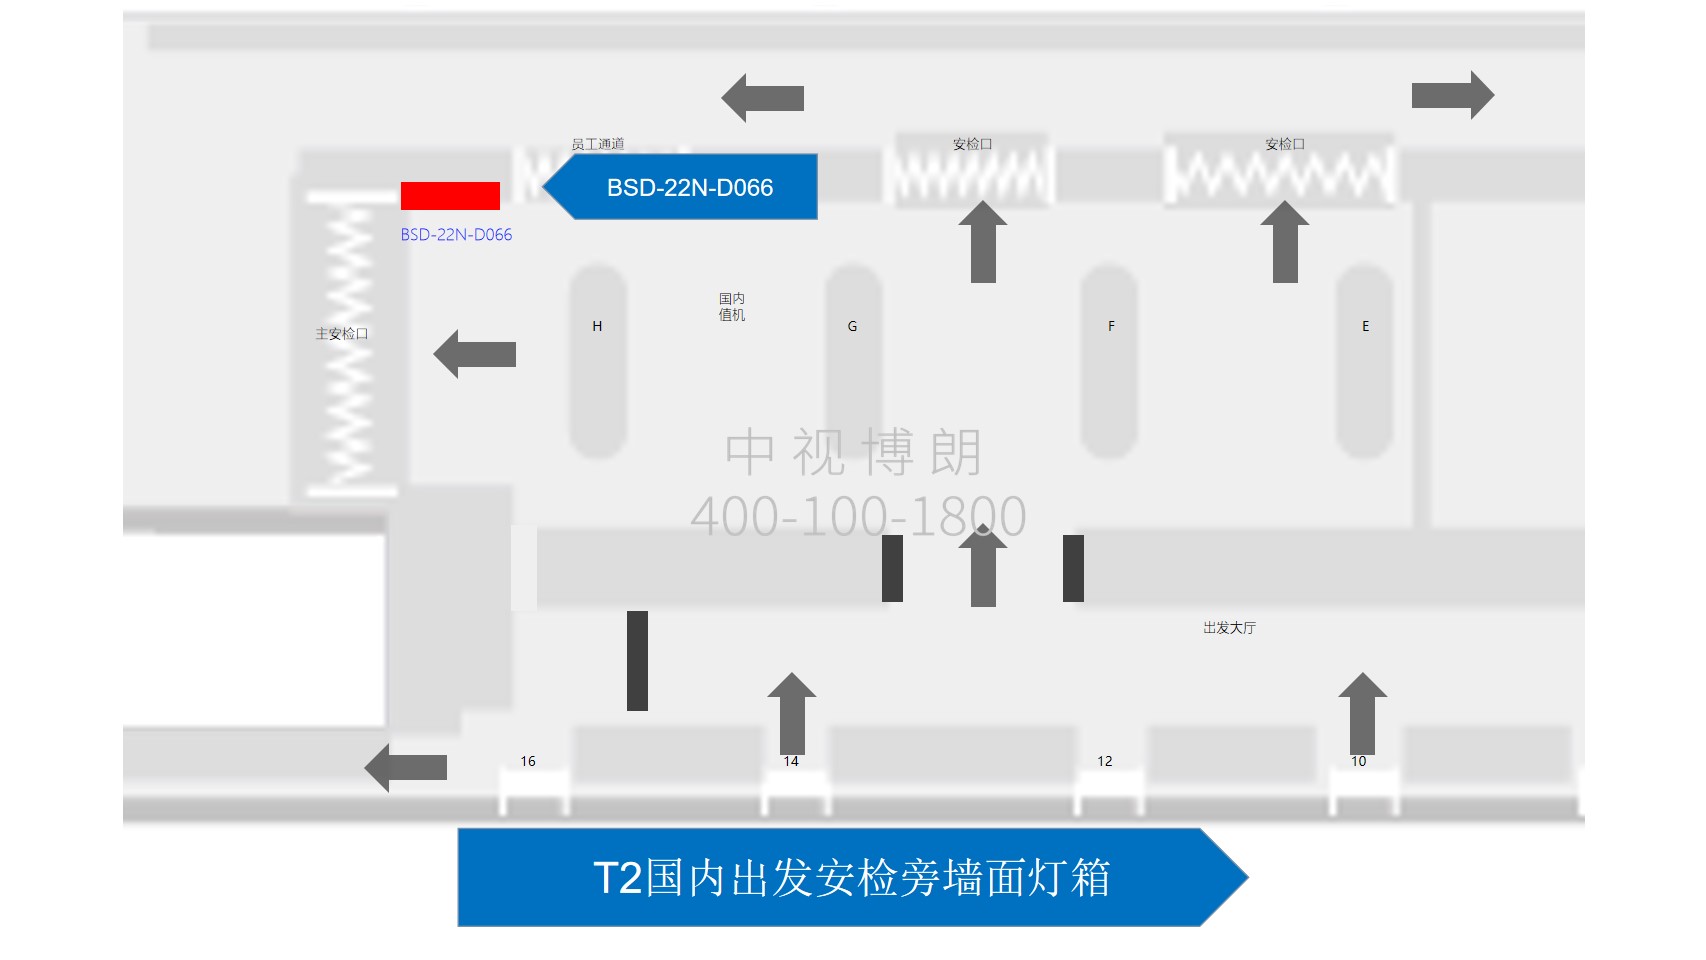 北京首都机场广告-T2 Domestic Departure Security Check Wall Light Box位置图